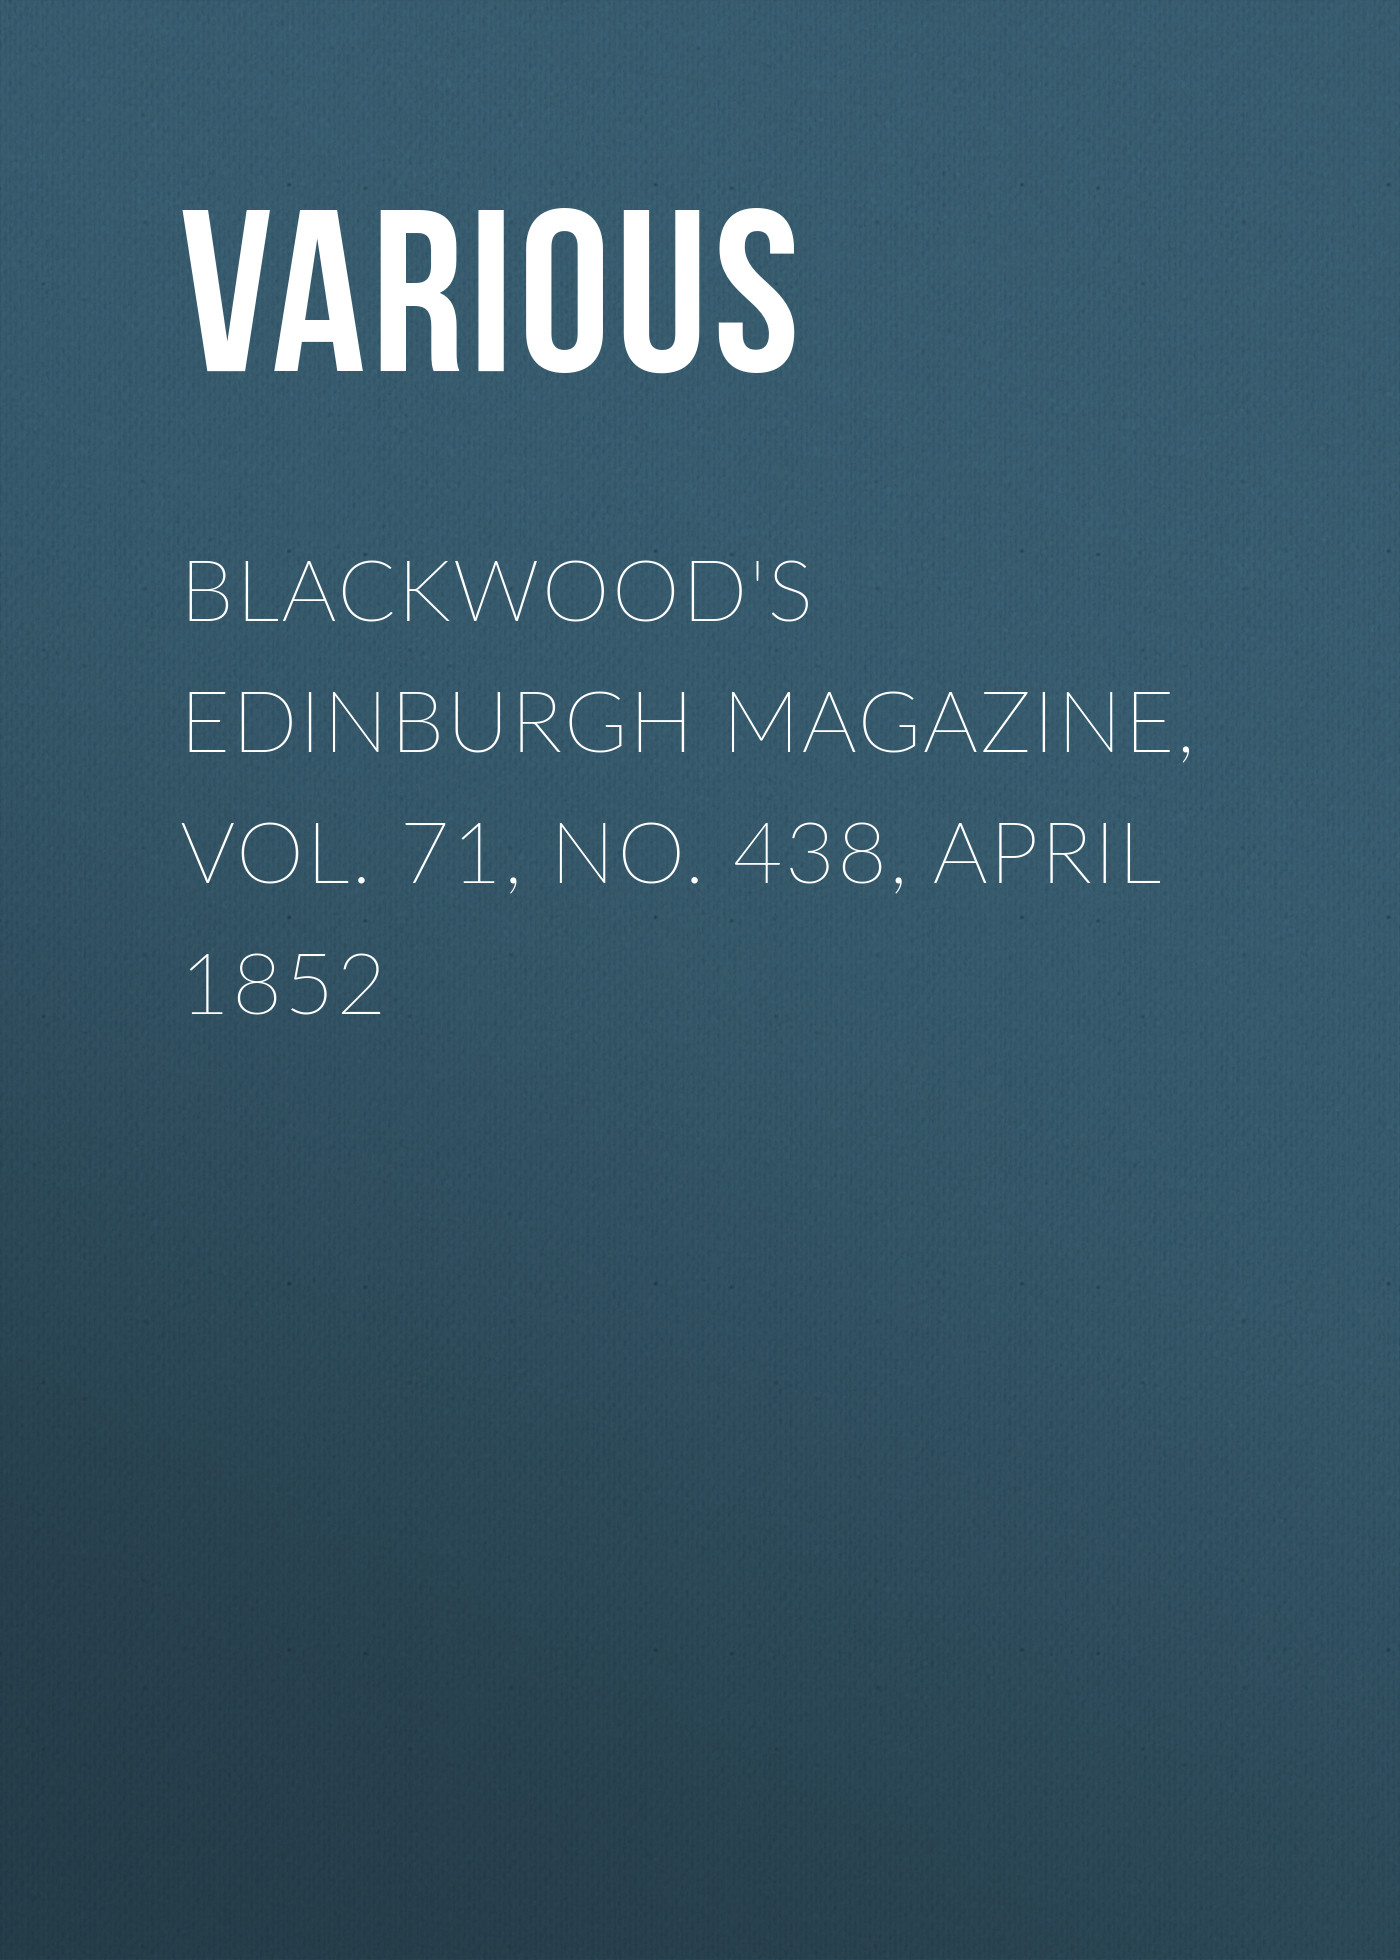 Книга Blackwood's Edinburgh Magazine, Vol. 71, No. 438, April 1852 из серии , созданная  Various, может относится к жанру Журналы, Зарубежная образовательная литература, Книги о Путешествиях. Стоимость электронной книги Blackwood's Edinburgh Magazine, Vol. 71, No. 438, April 1852 с идентификатором 25569431 составляет 0 руб.